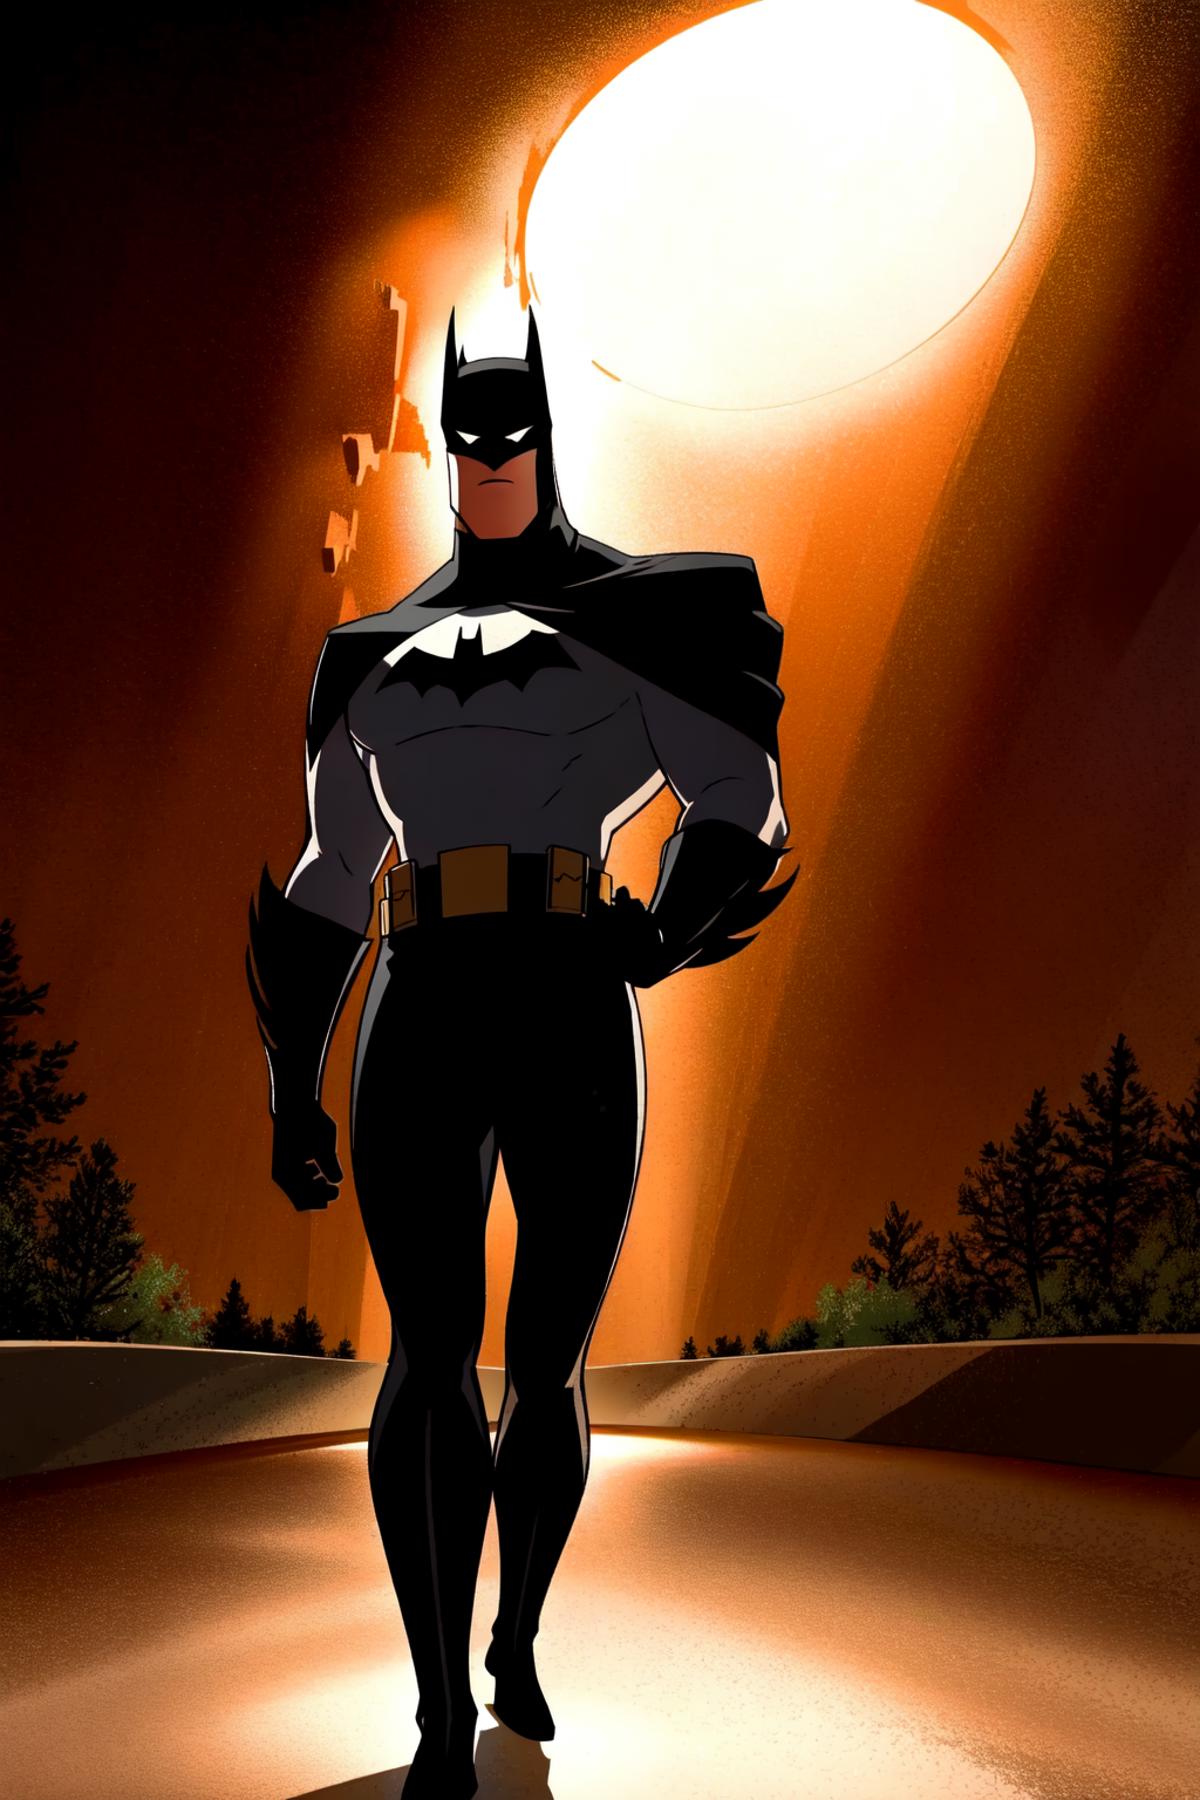 Batman from the new batman adventures image by Junbegun